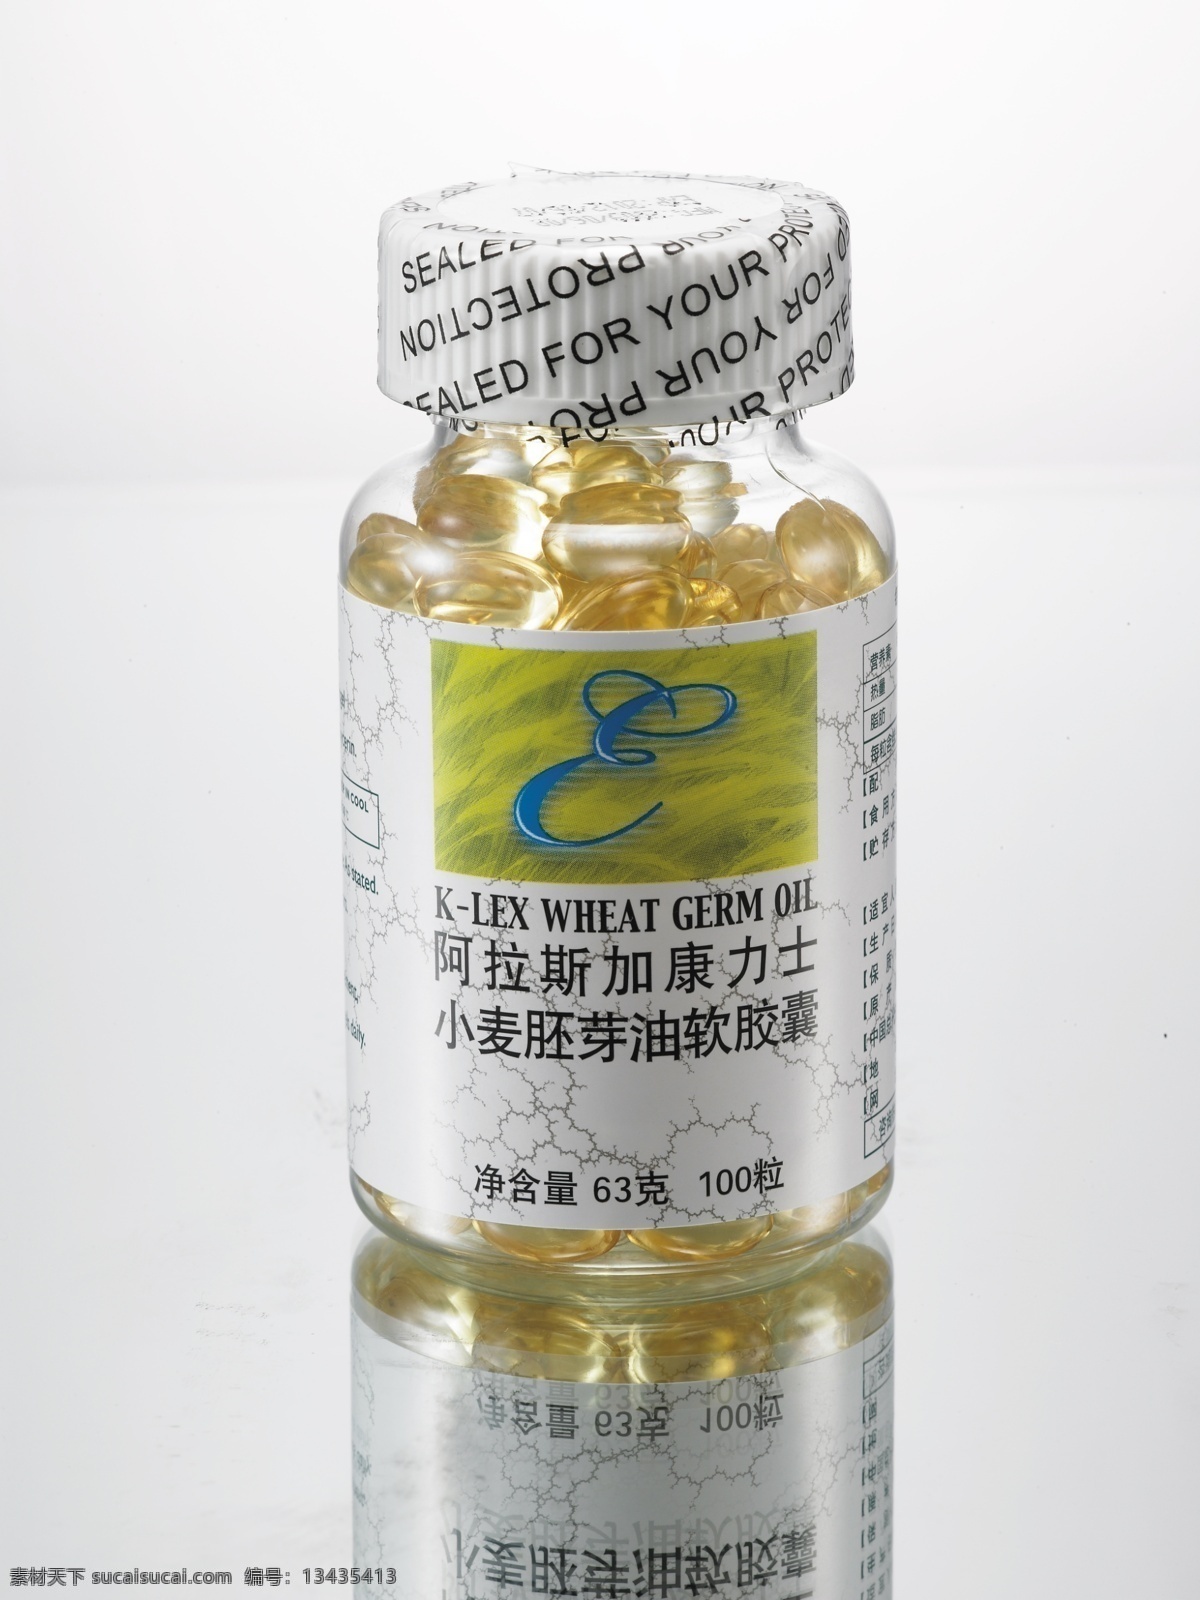 康 力士 牌 小麦 胚芽 油 软胶囊 阿拉斯加 康力士 小麦胚芽油 保健品 2009 年 产品 现代科技 医疗护理 白色